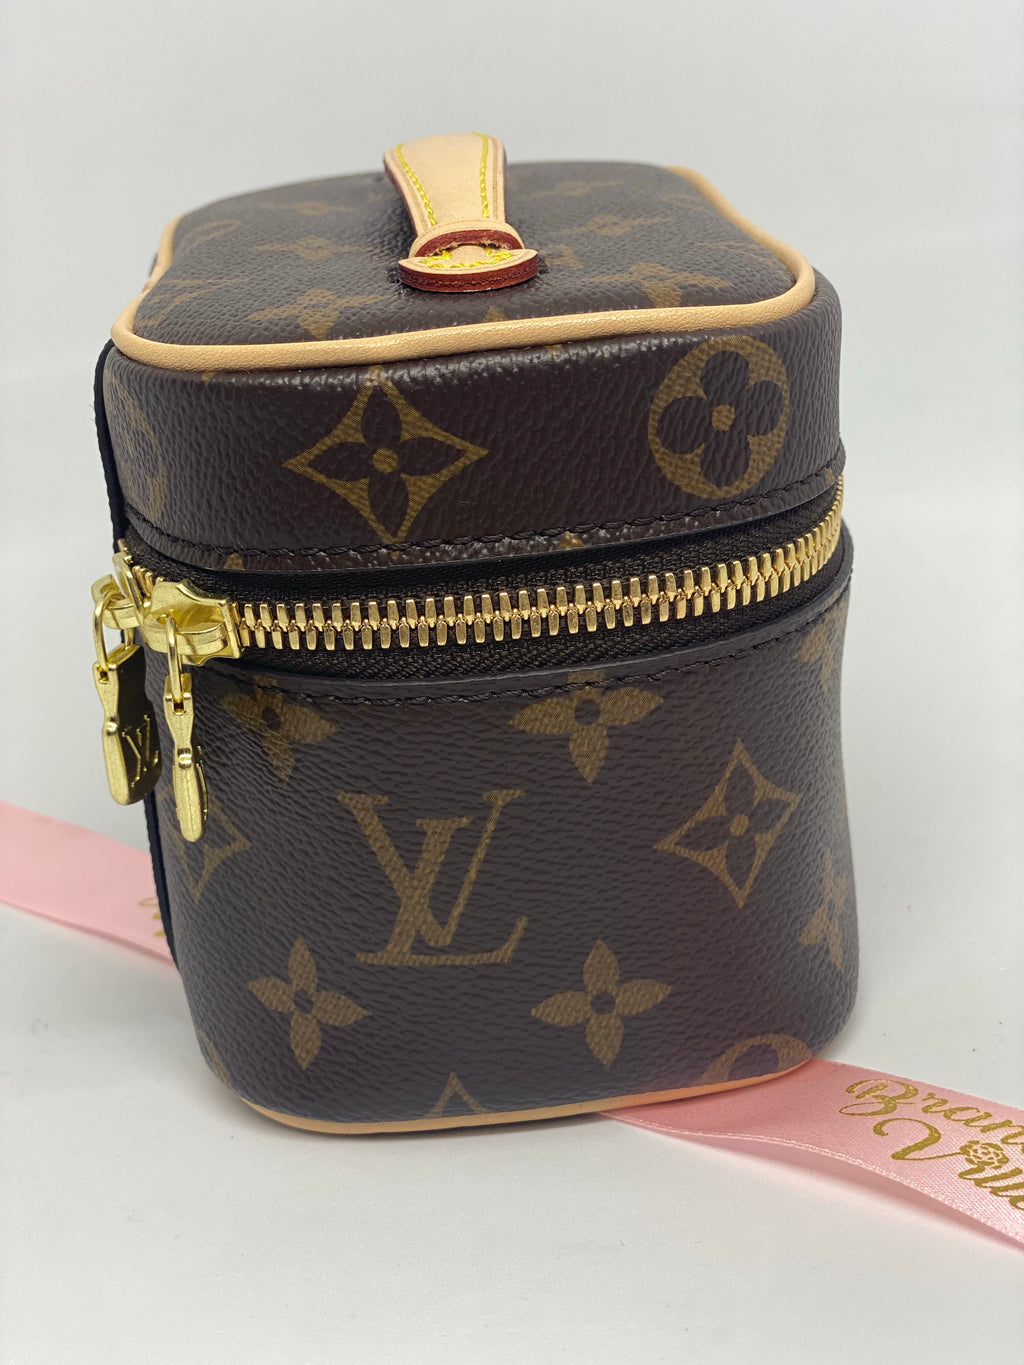 Louis Vuitton Nice Miss Vanity(Brown)